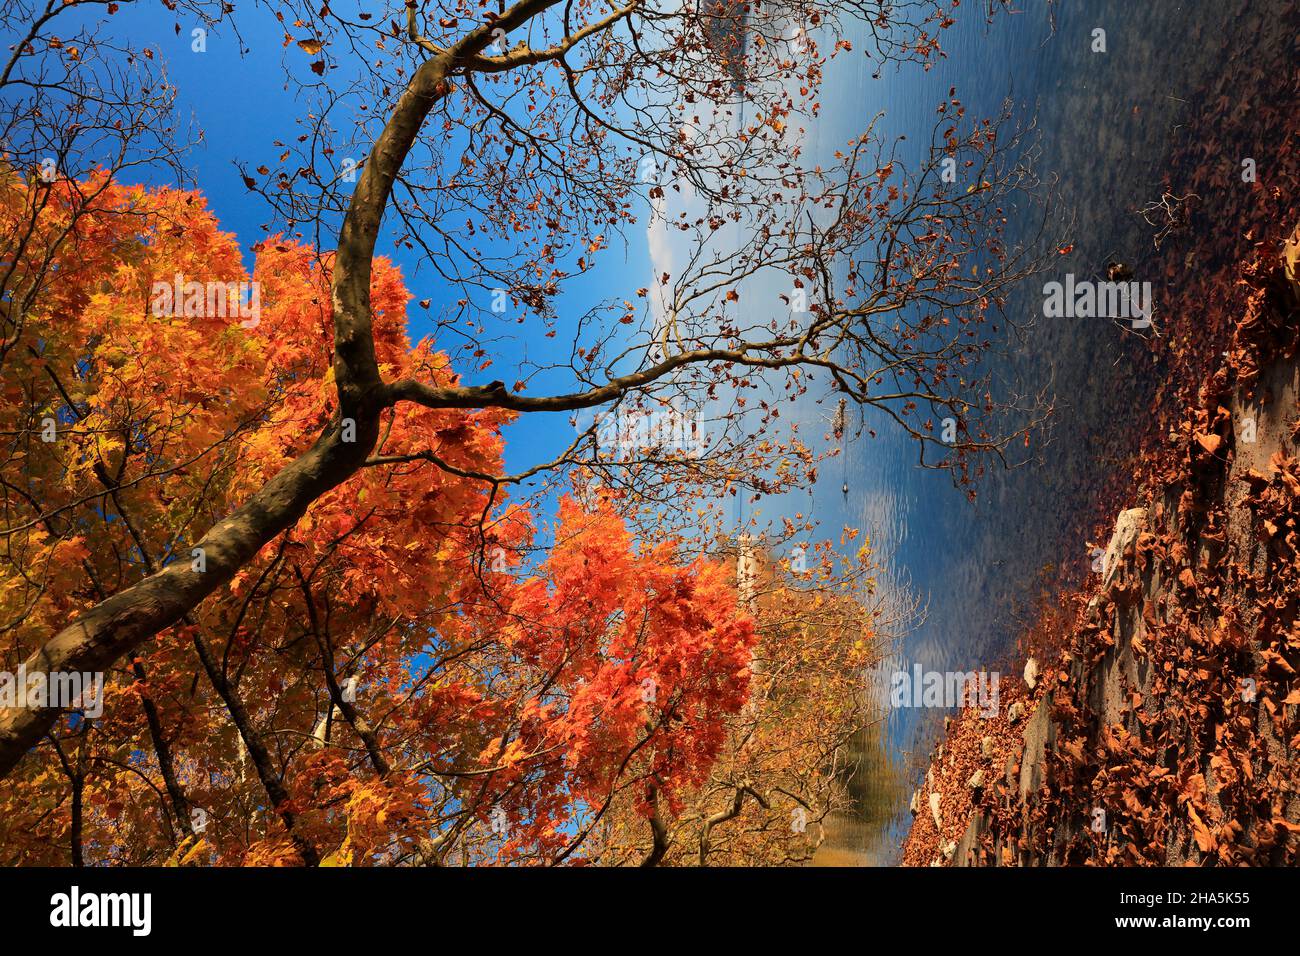 lago di costanza, mainau, autunno dorato, estate indiana, colori, splendore, fogliame Foto Stock